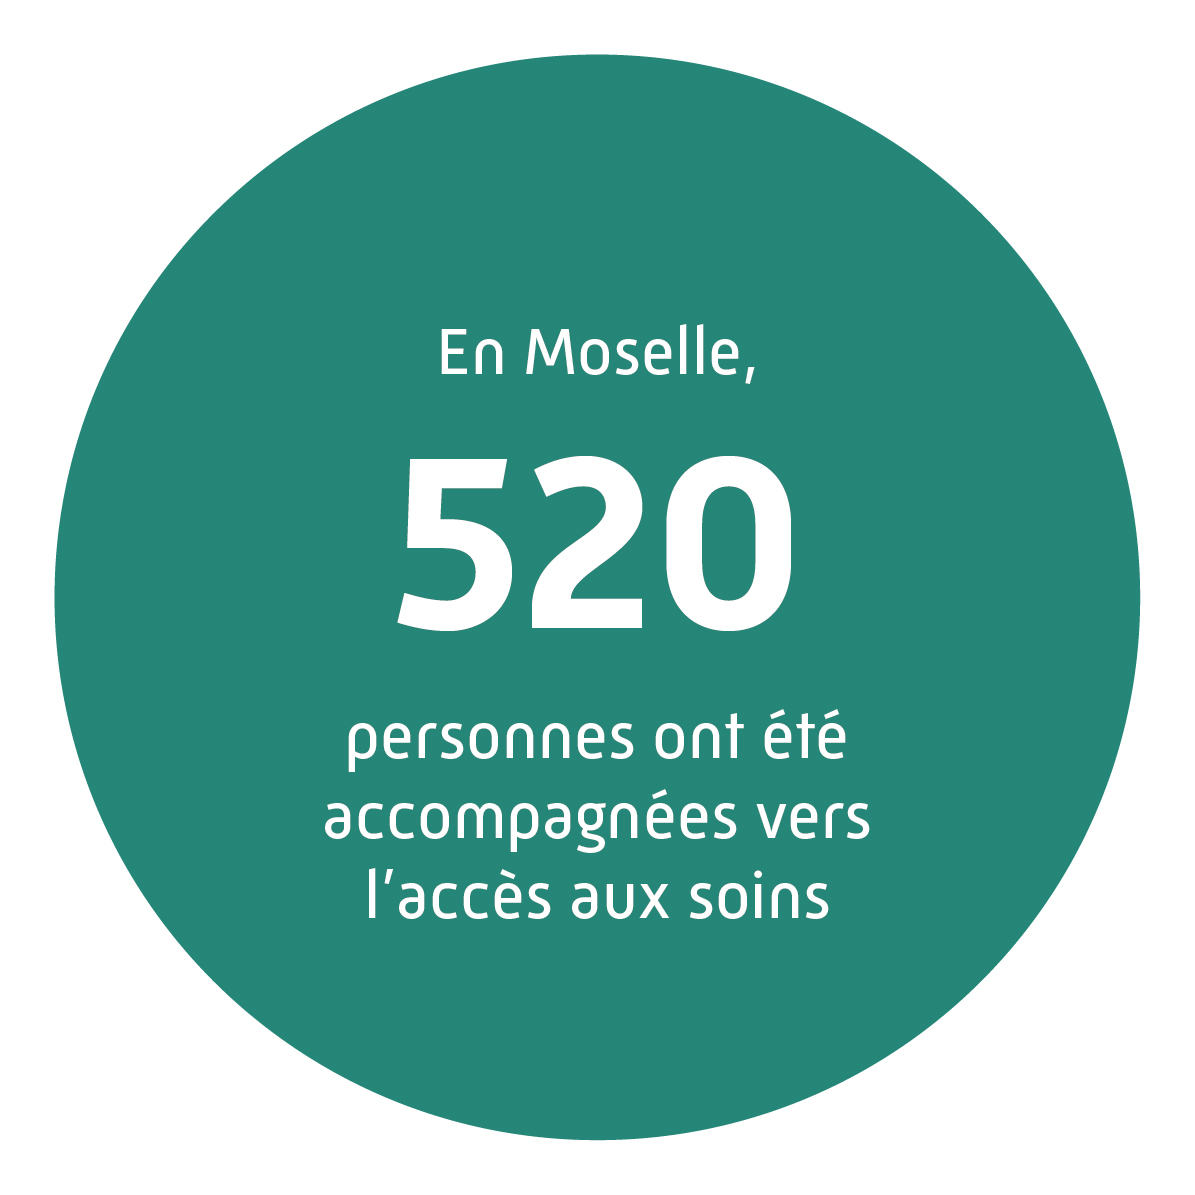 En Moselle, 520 personnes ont été accompagnées vers l'accès aux soins.